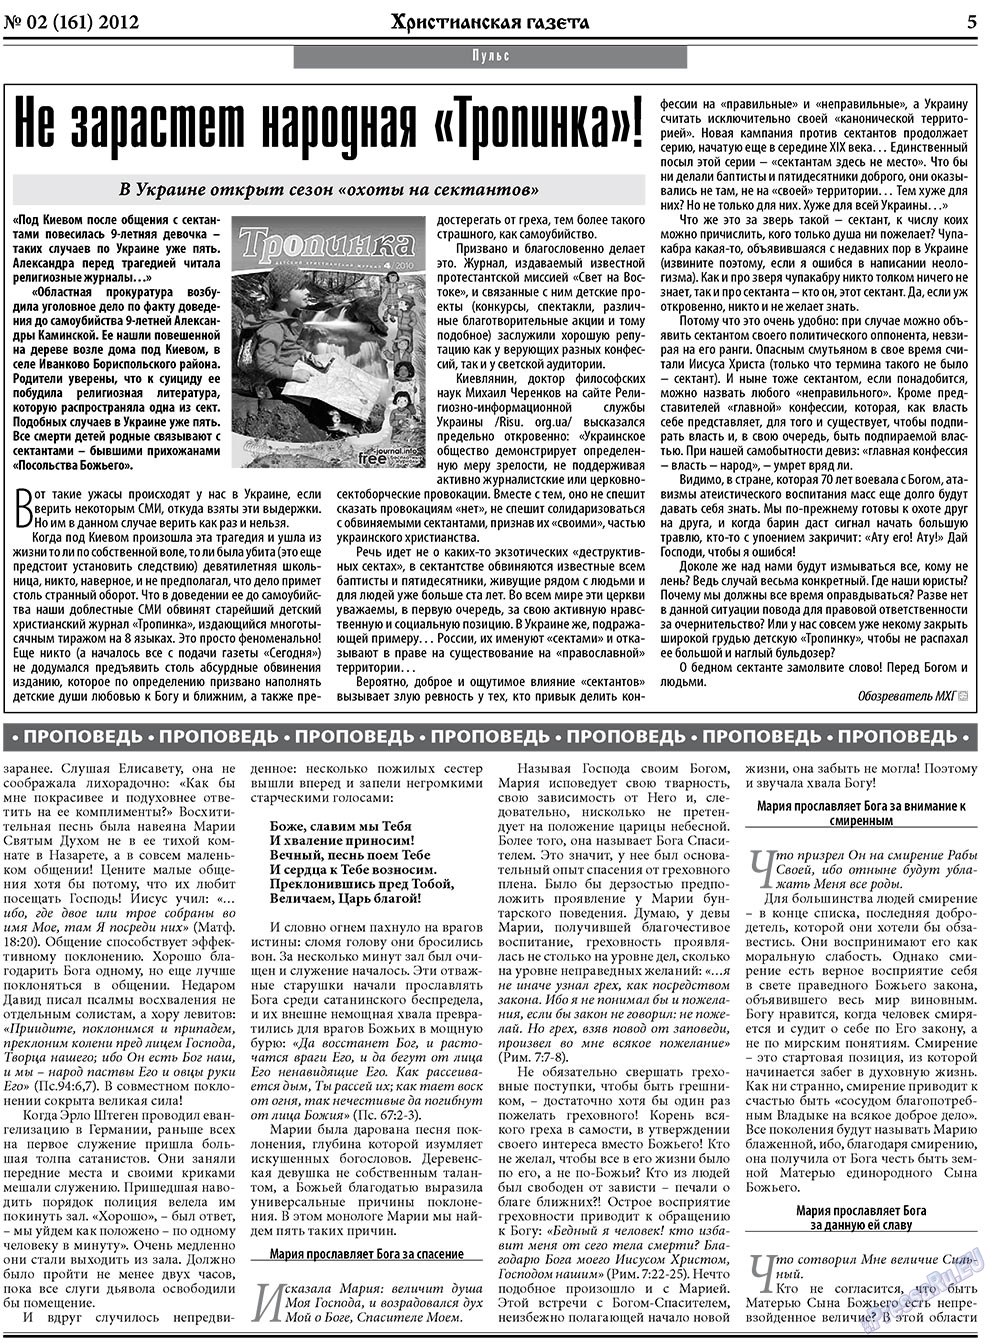 Христианская газета, газета. 2012 №2 стр.5